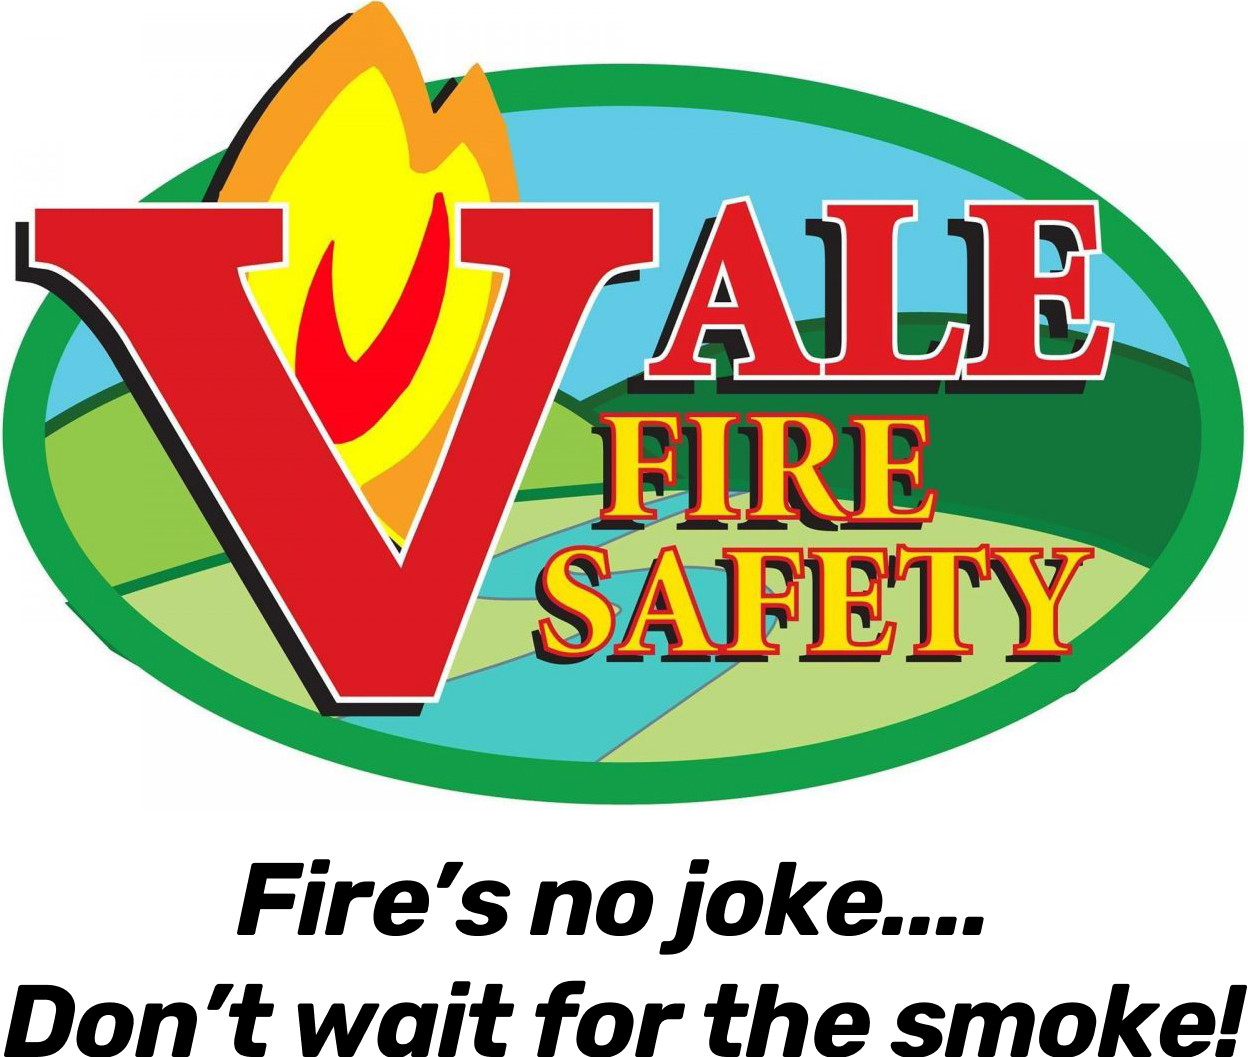 Vale Fire Safety logo